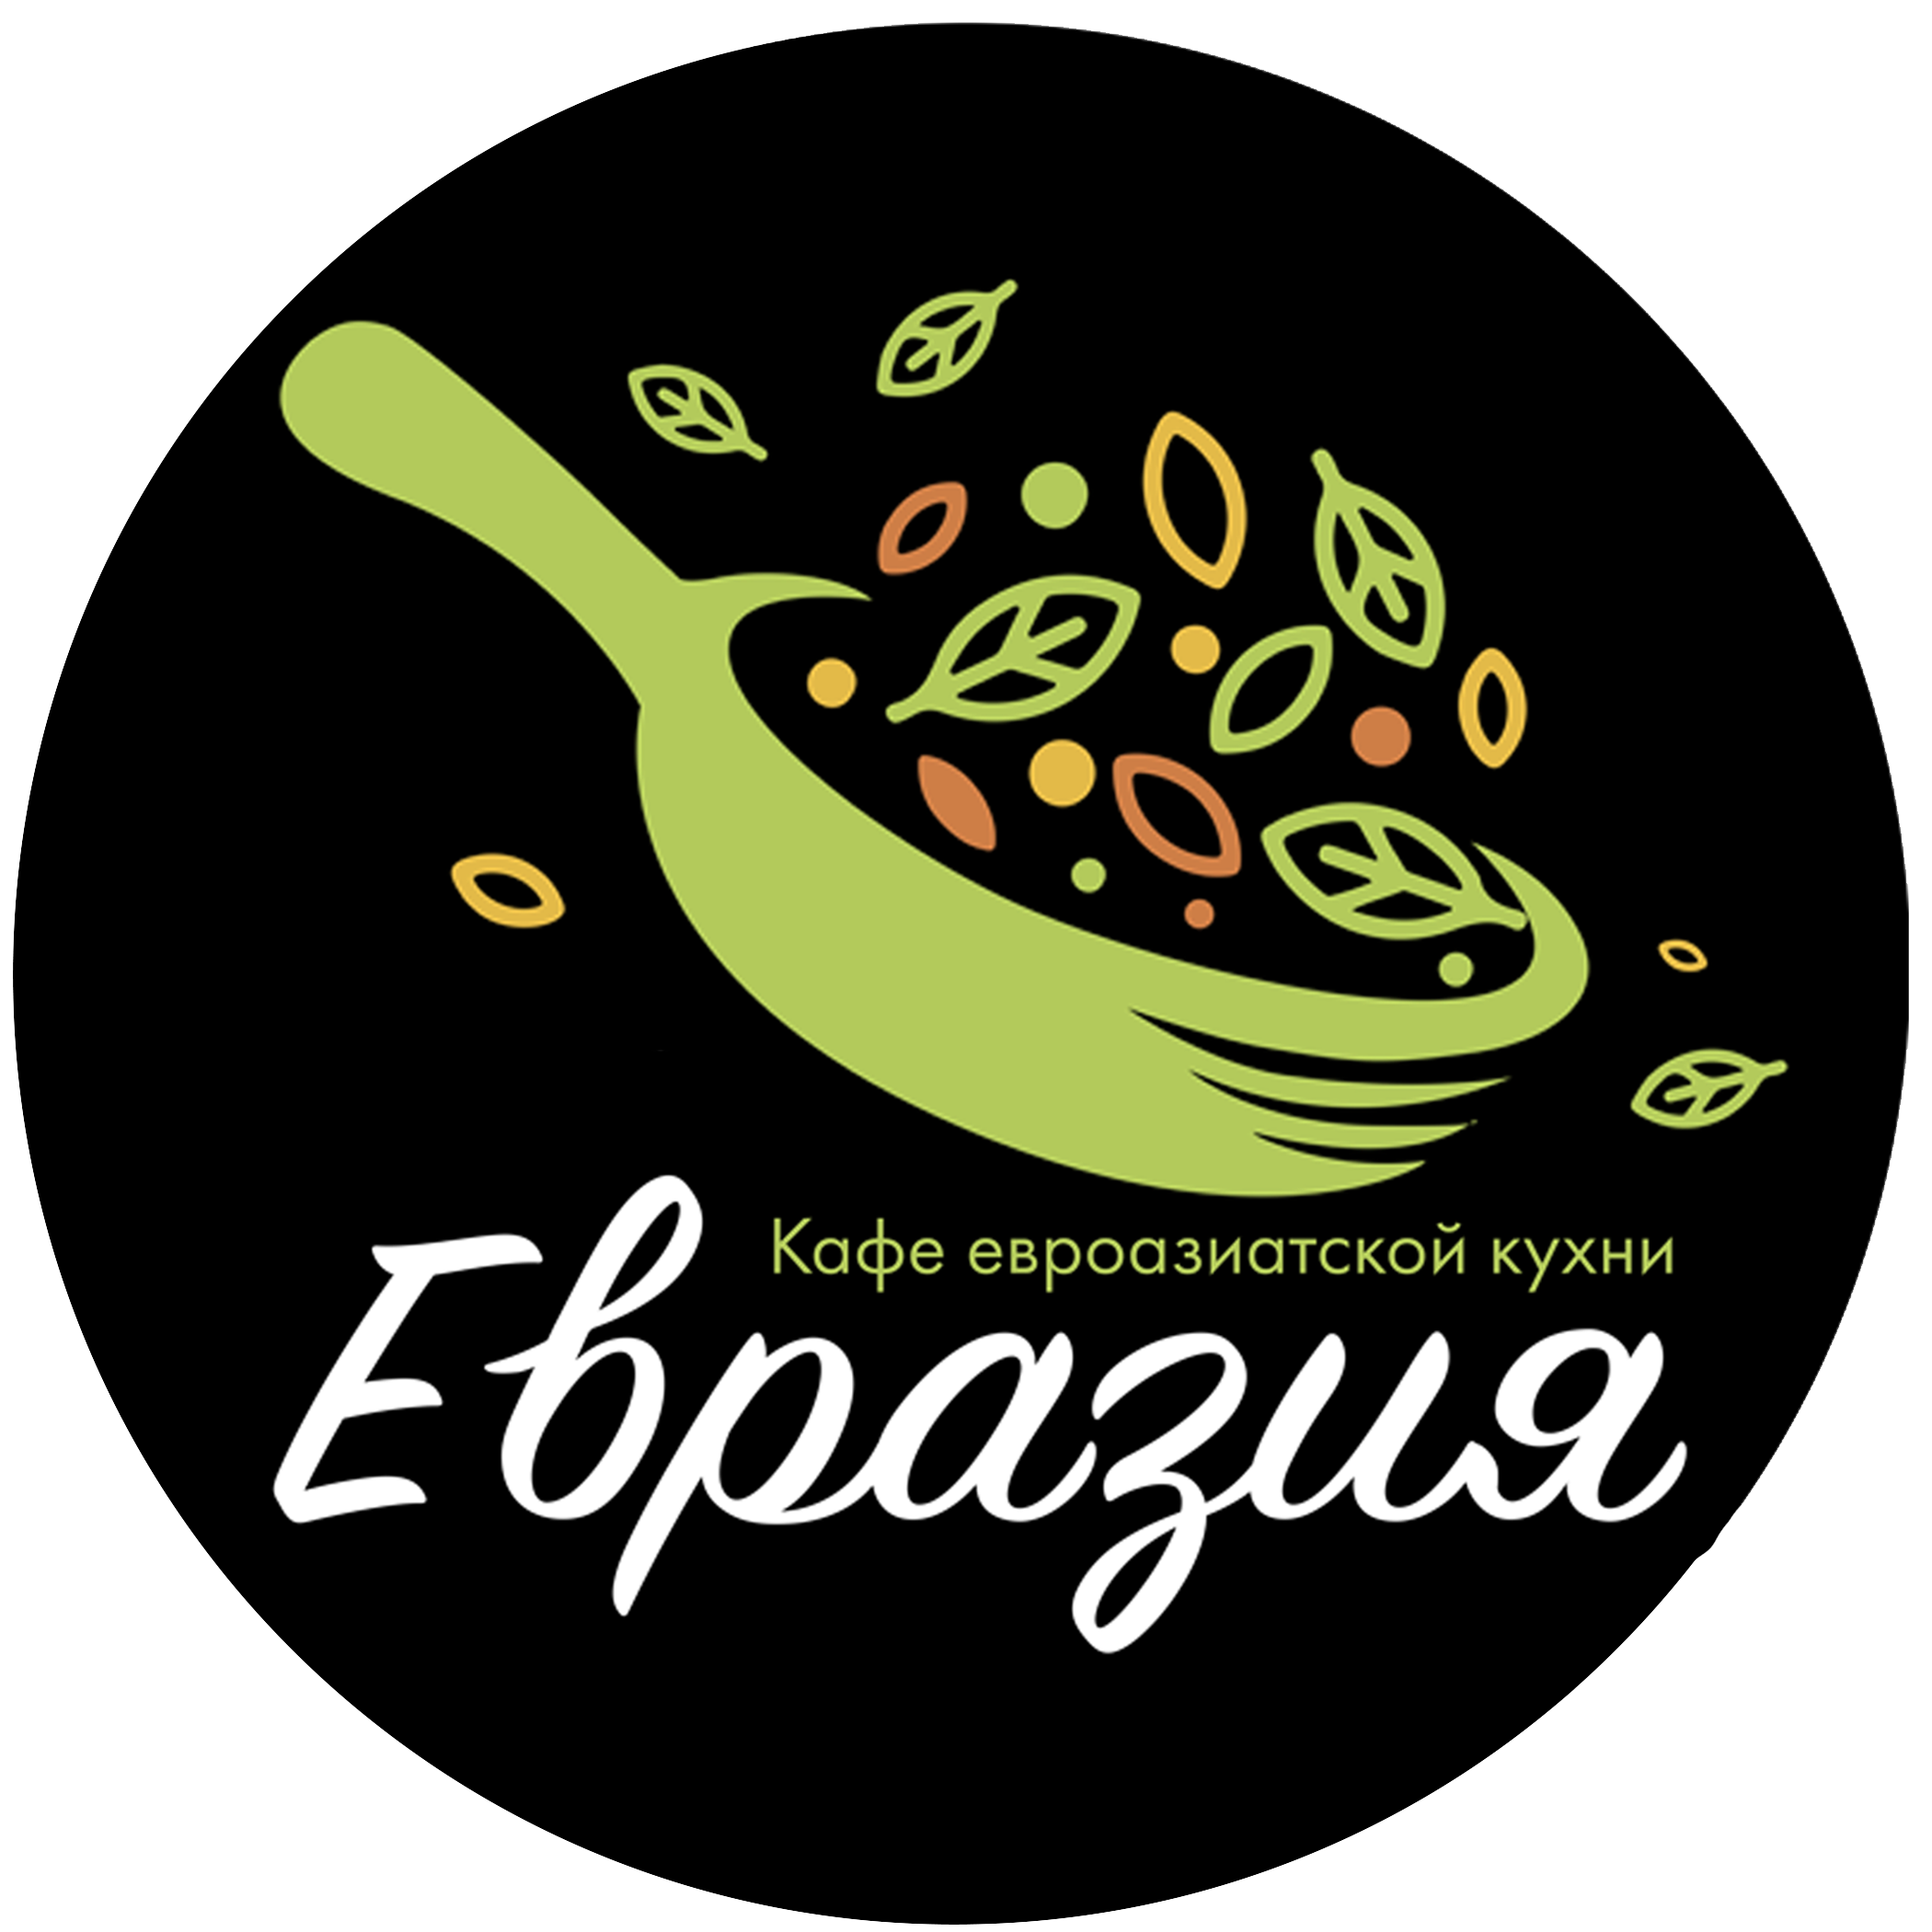 Евразия краснодар. Евразия ресторан Благовещенск. Кафе Евразия логотип. Логотип кафе азиатской кухни. Евразия ресторан лого.